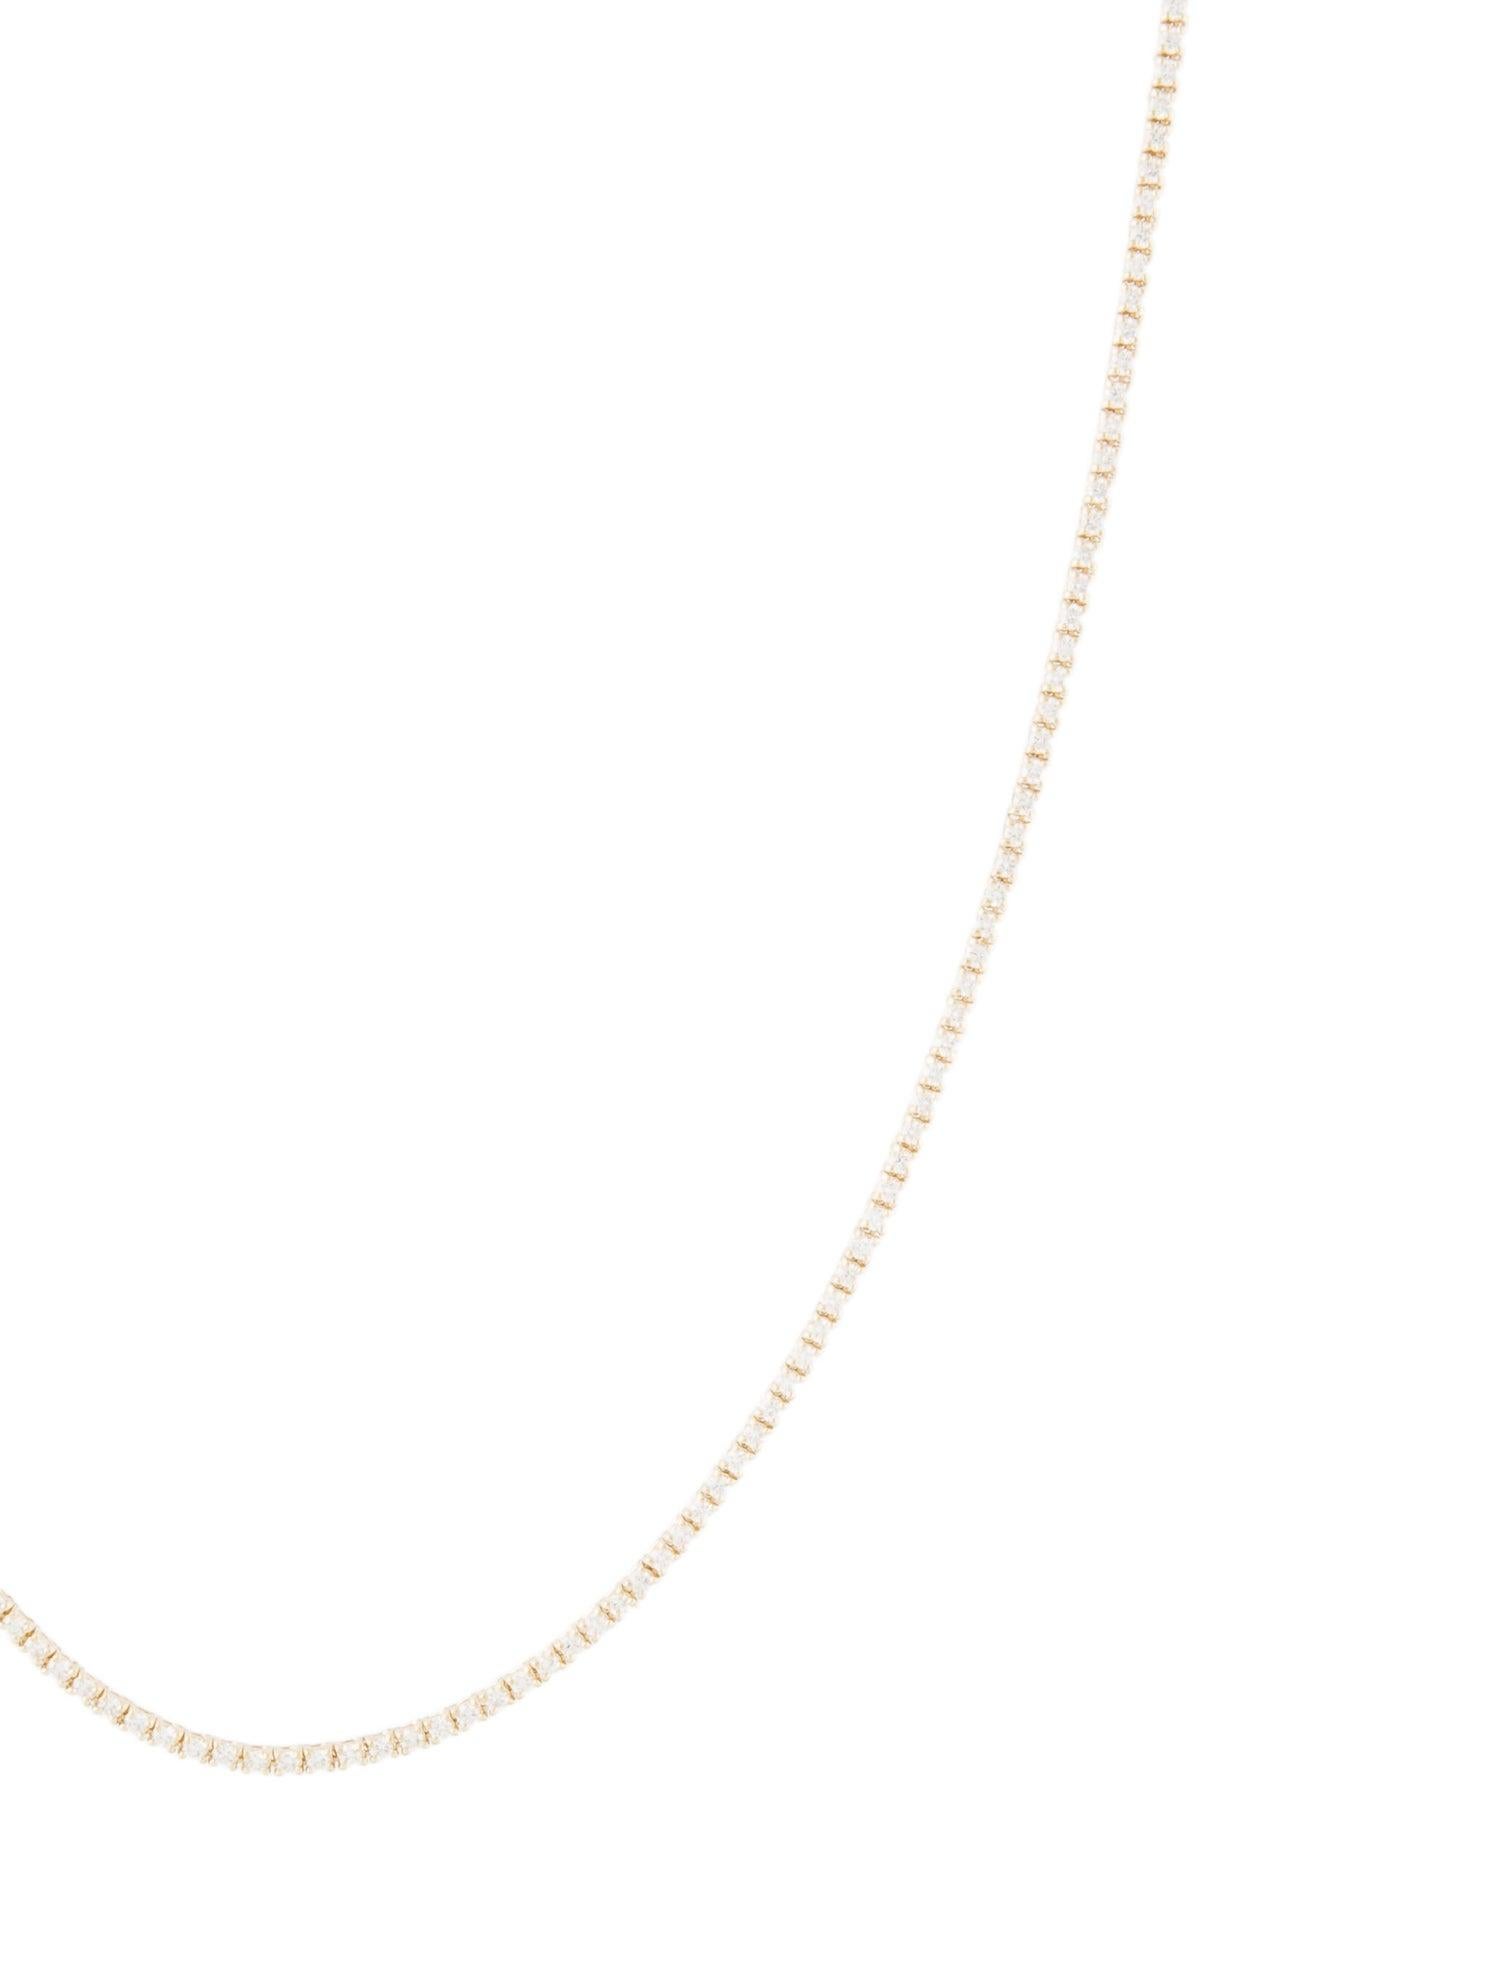 Diese klassische, elegante und schöne Diamant-Halskette wird Ihren Look so glamourös machen! Diese Halskette ist aus 14-karätigem Gold gefertigt und verfügt über 213 natürliche runde weiße Diamanten mit einem Gewicht von etwa 3,12 Karat. Halskette